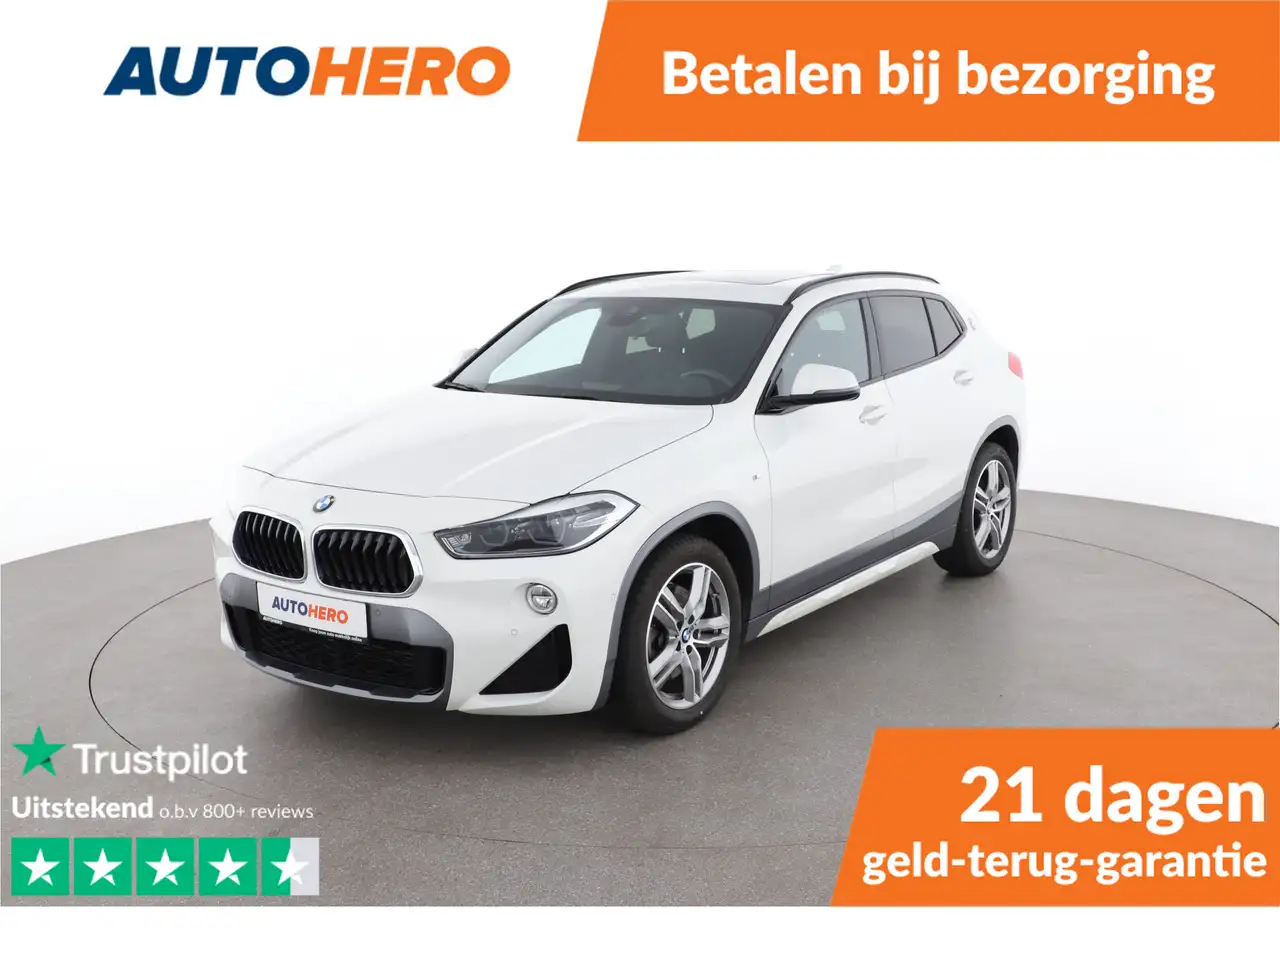 BMW X2 SUV/4x4/Pick-up in Wit tweedehands in AMSTERDAM voor € 25.149,-